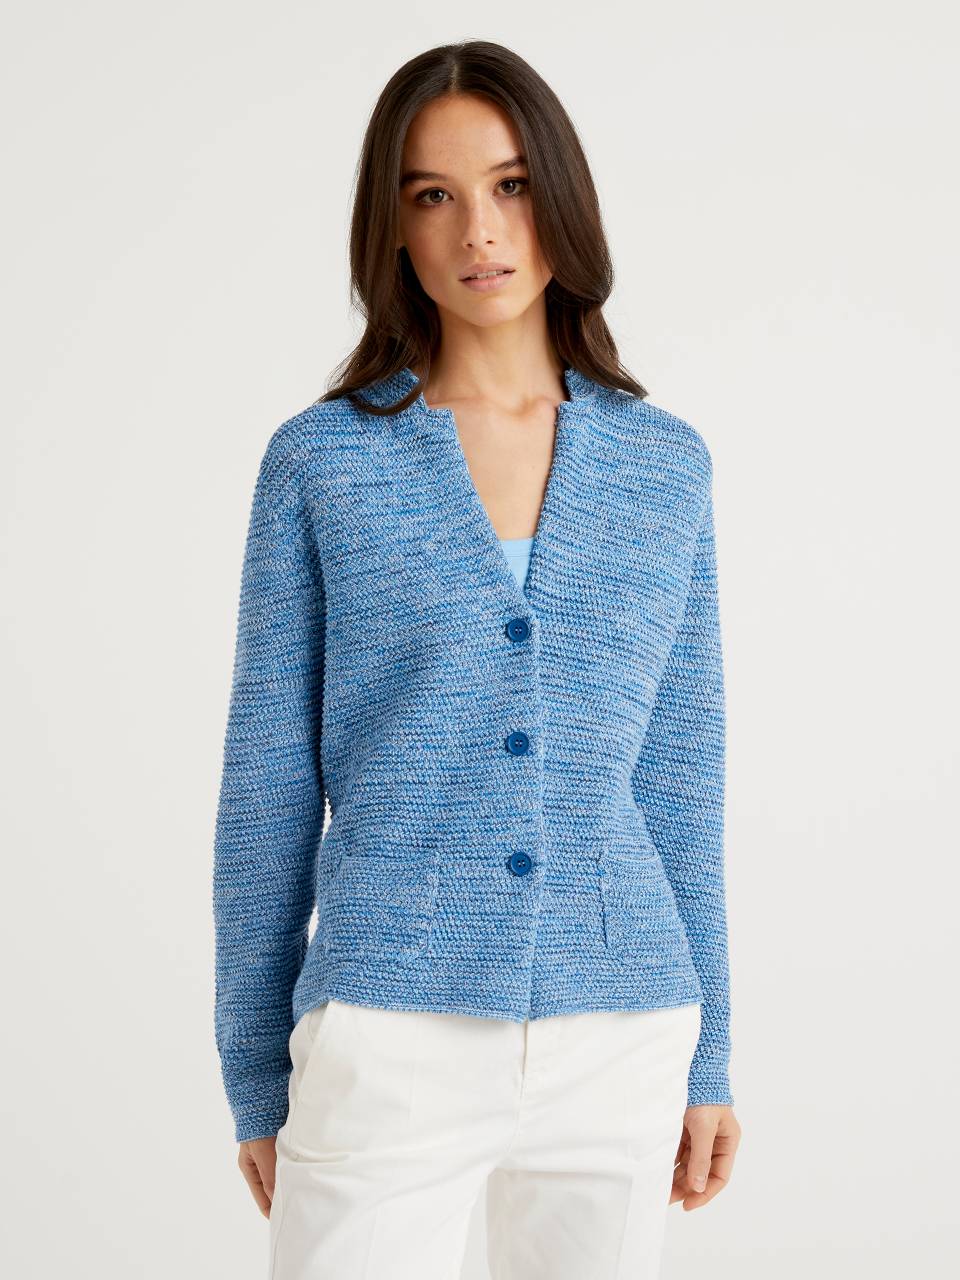 Benetton 100% cotton knit jacket. 1